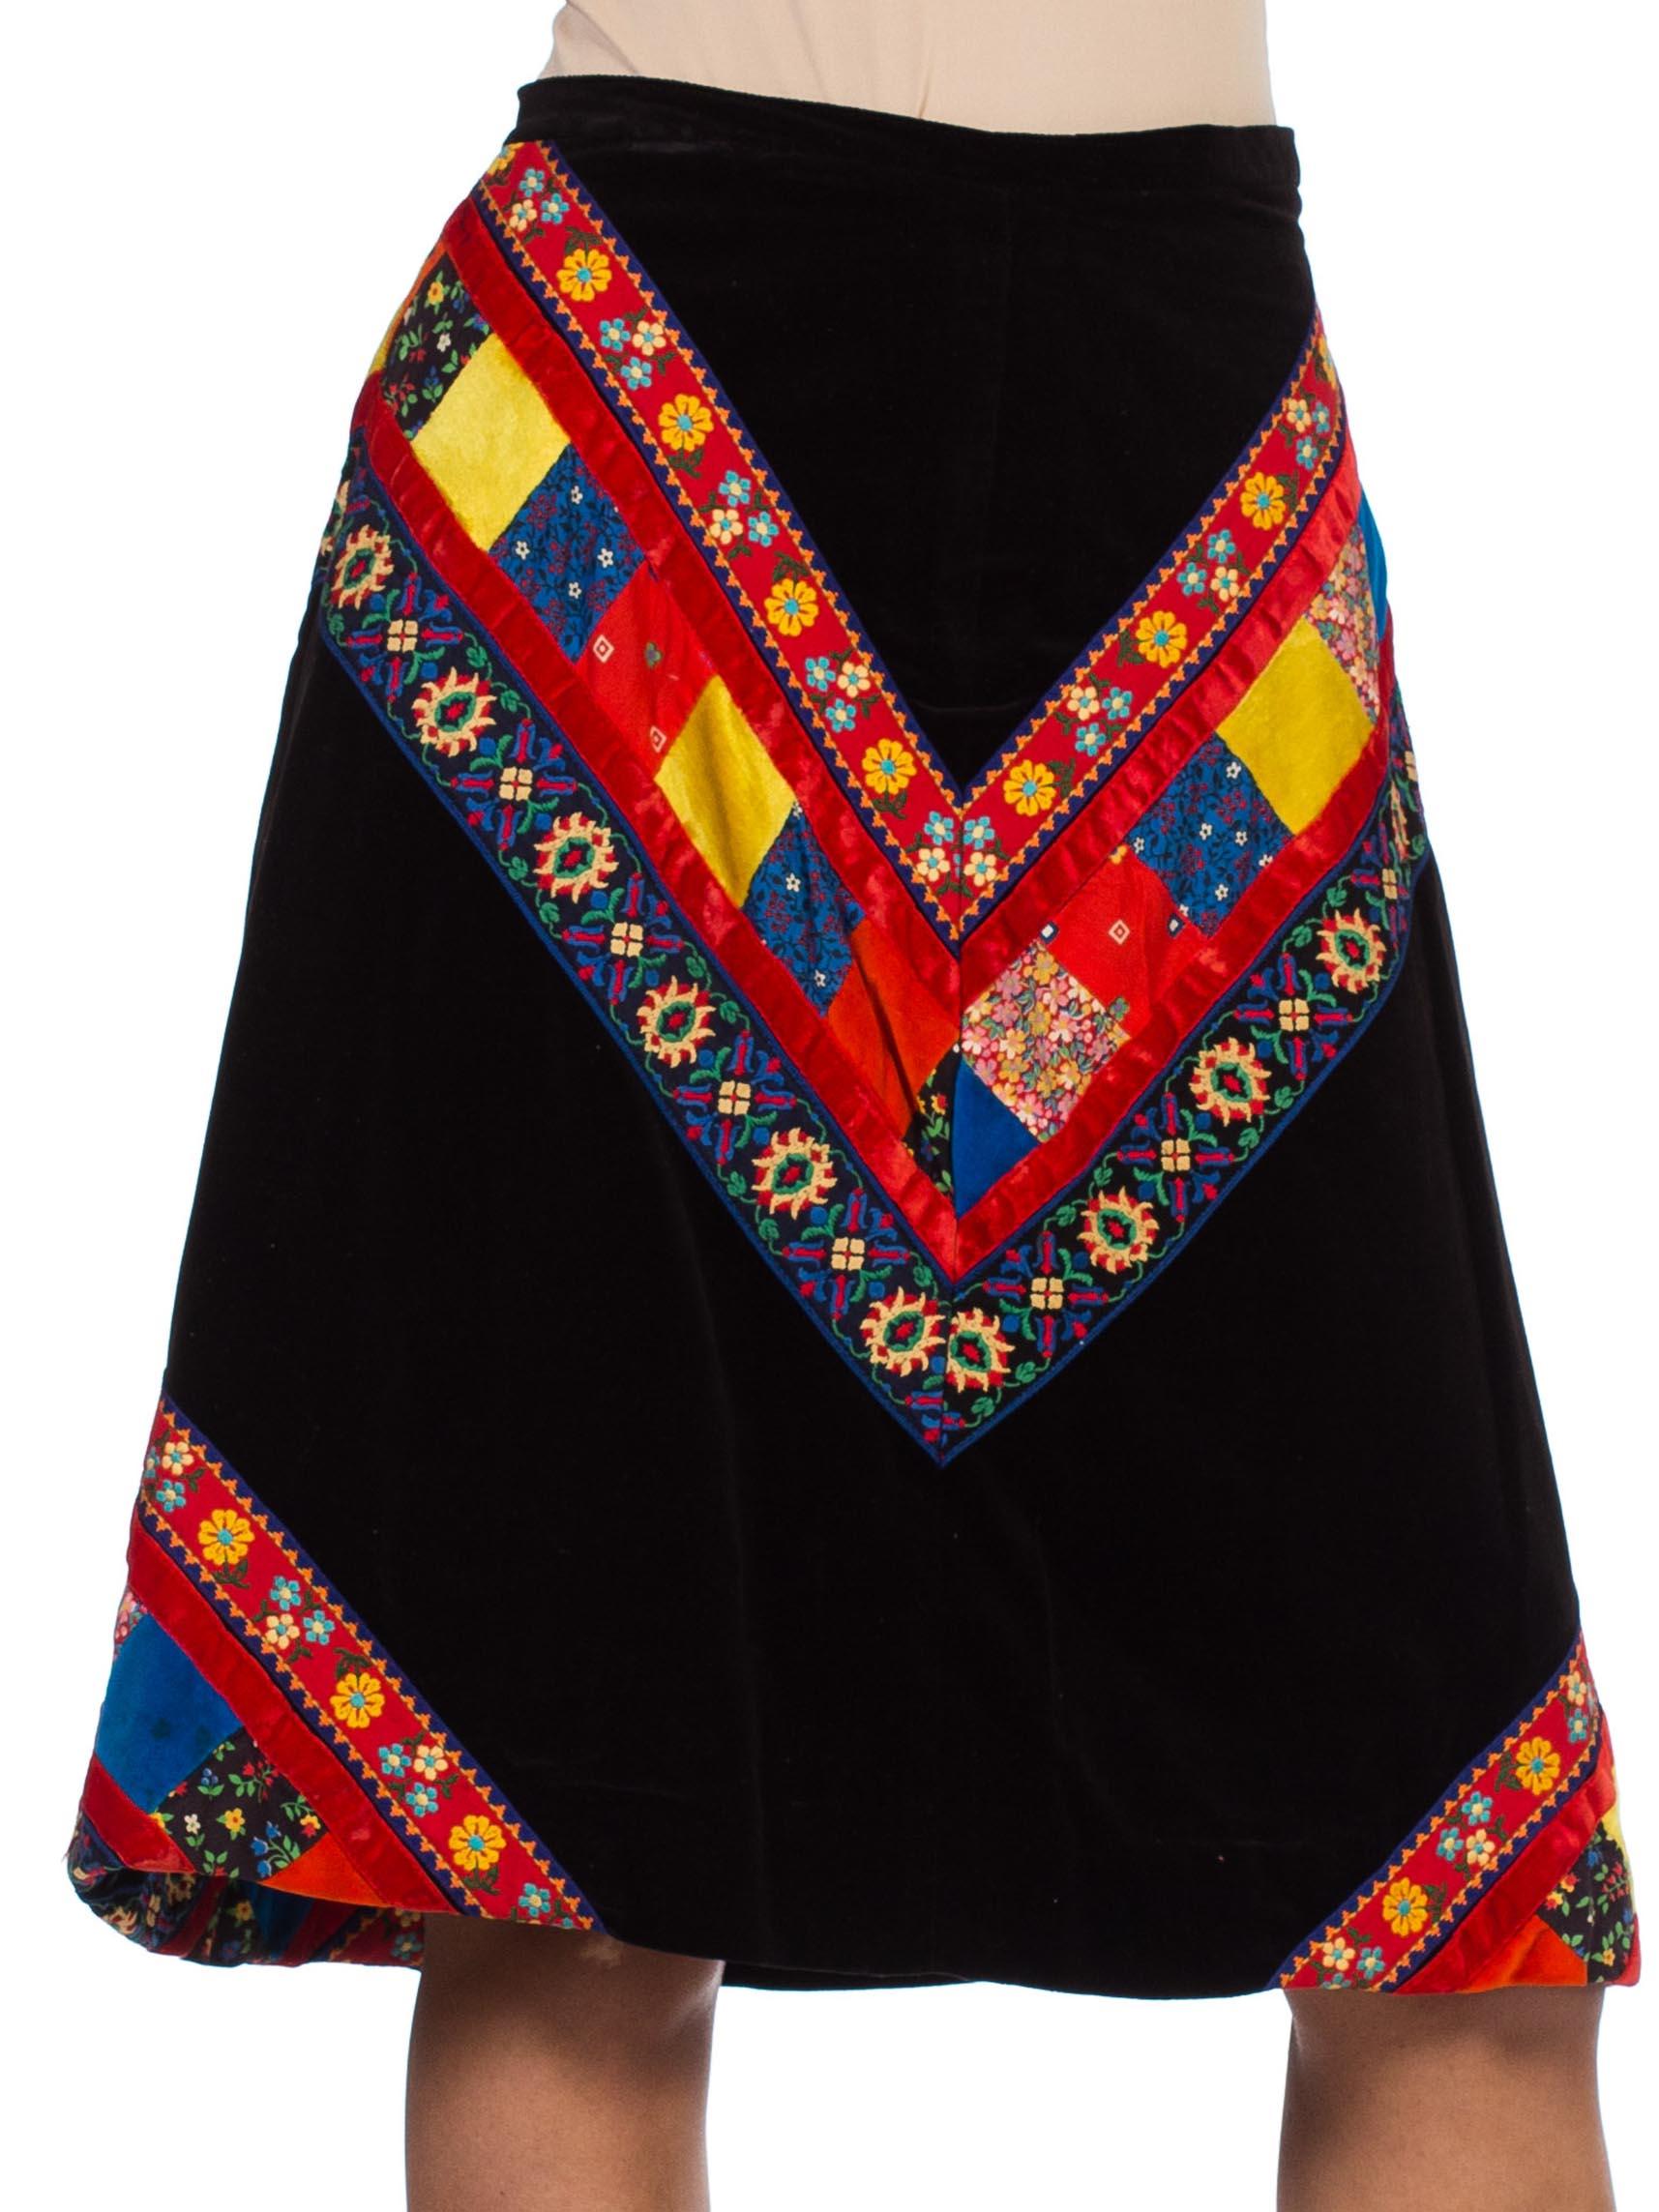 Women's 1970s Velvet & Floral Patchwork Skirt